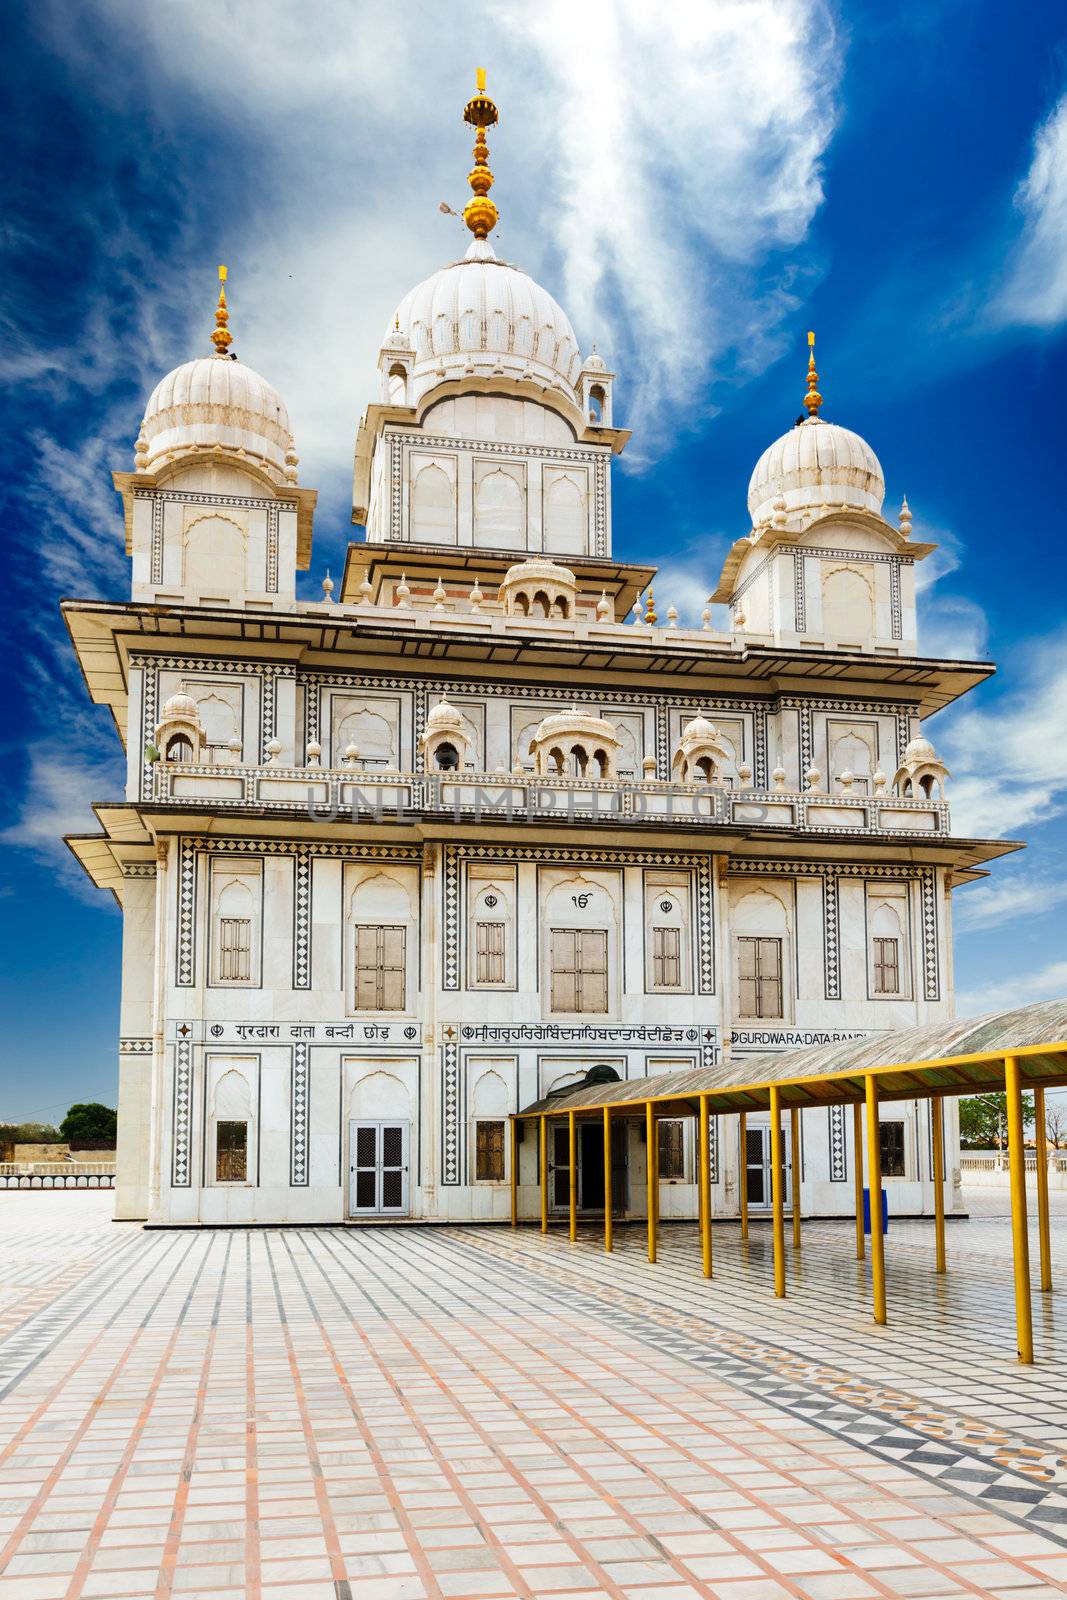 Sikh gurdwara by dimol